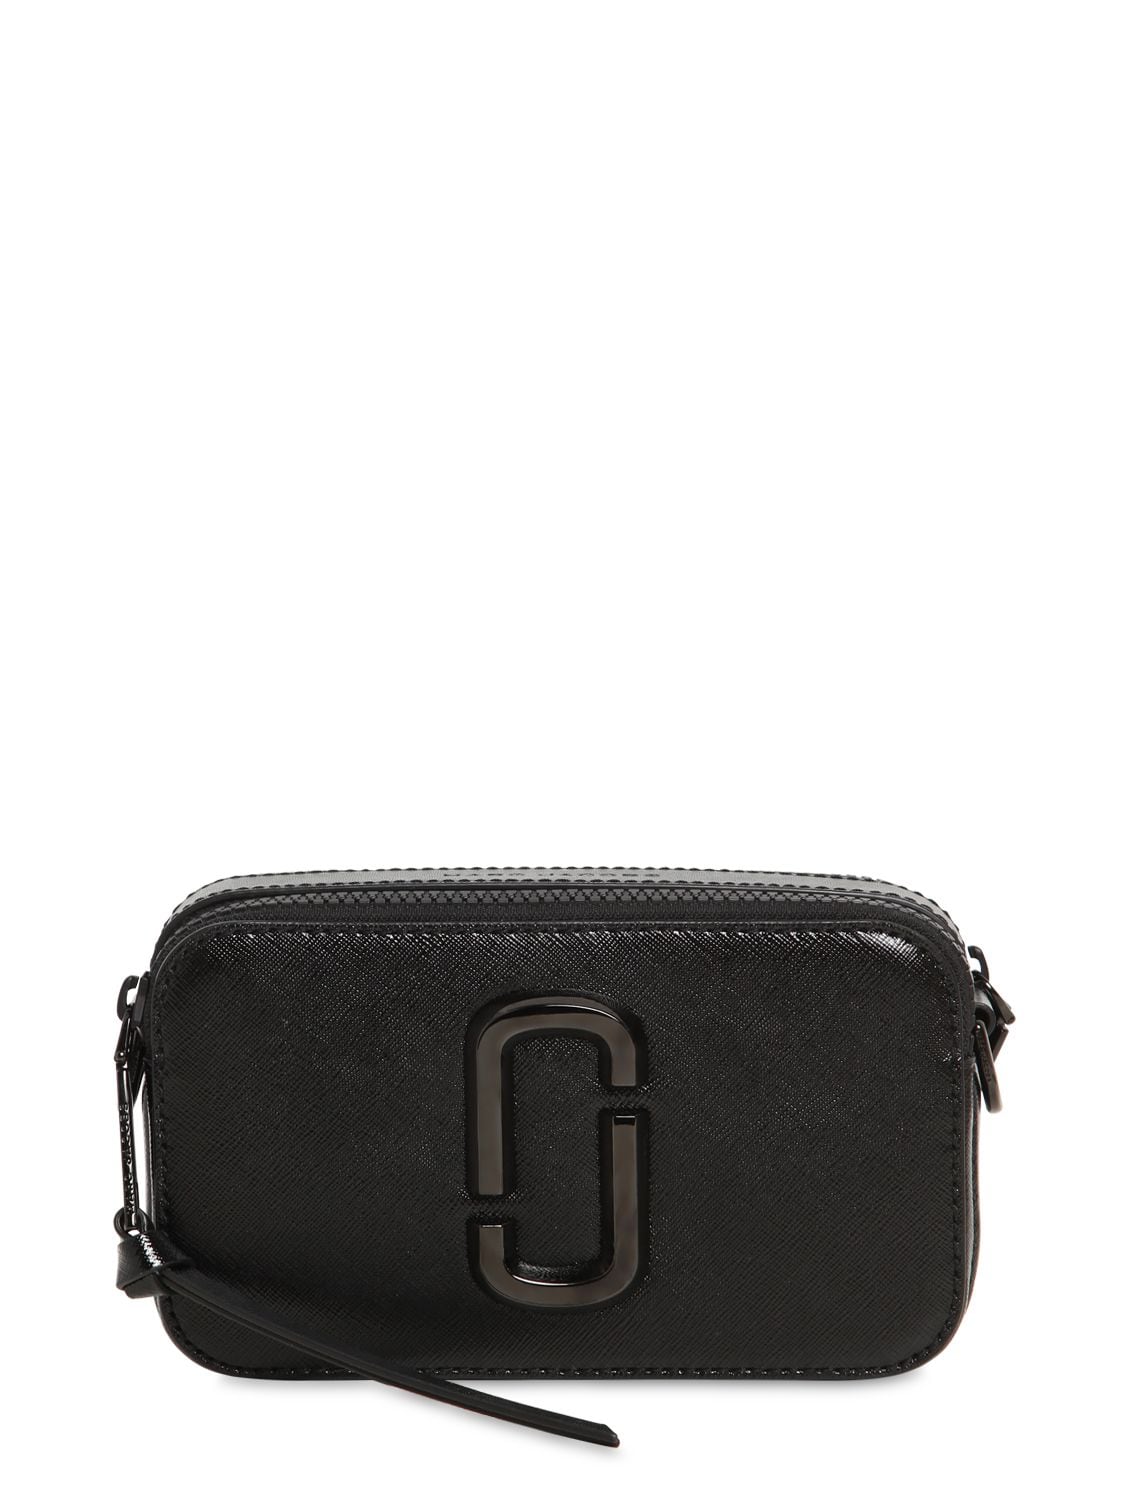 Image of Snapshot Leather Shoulder Bag